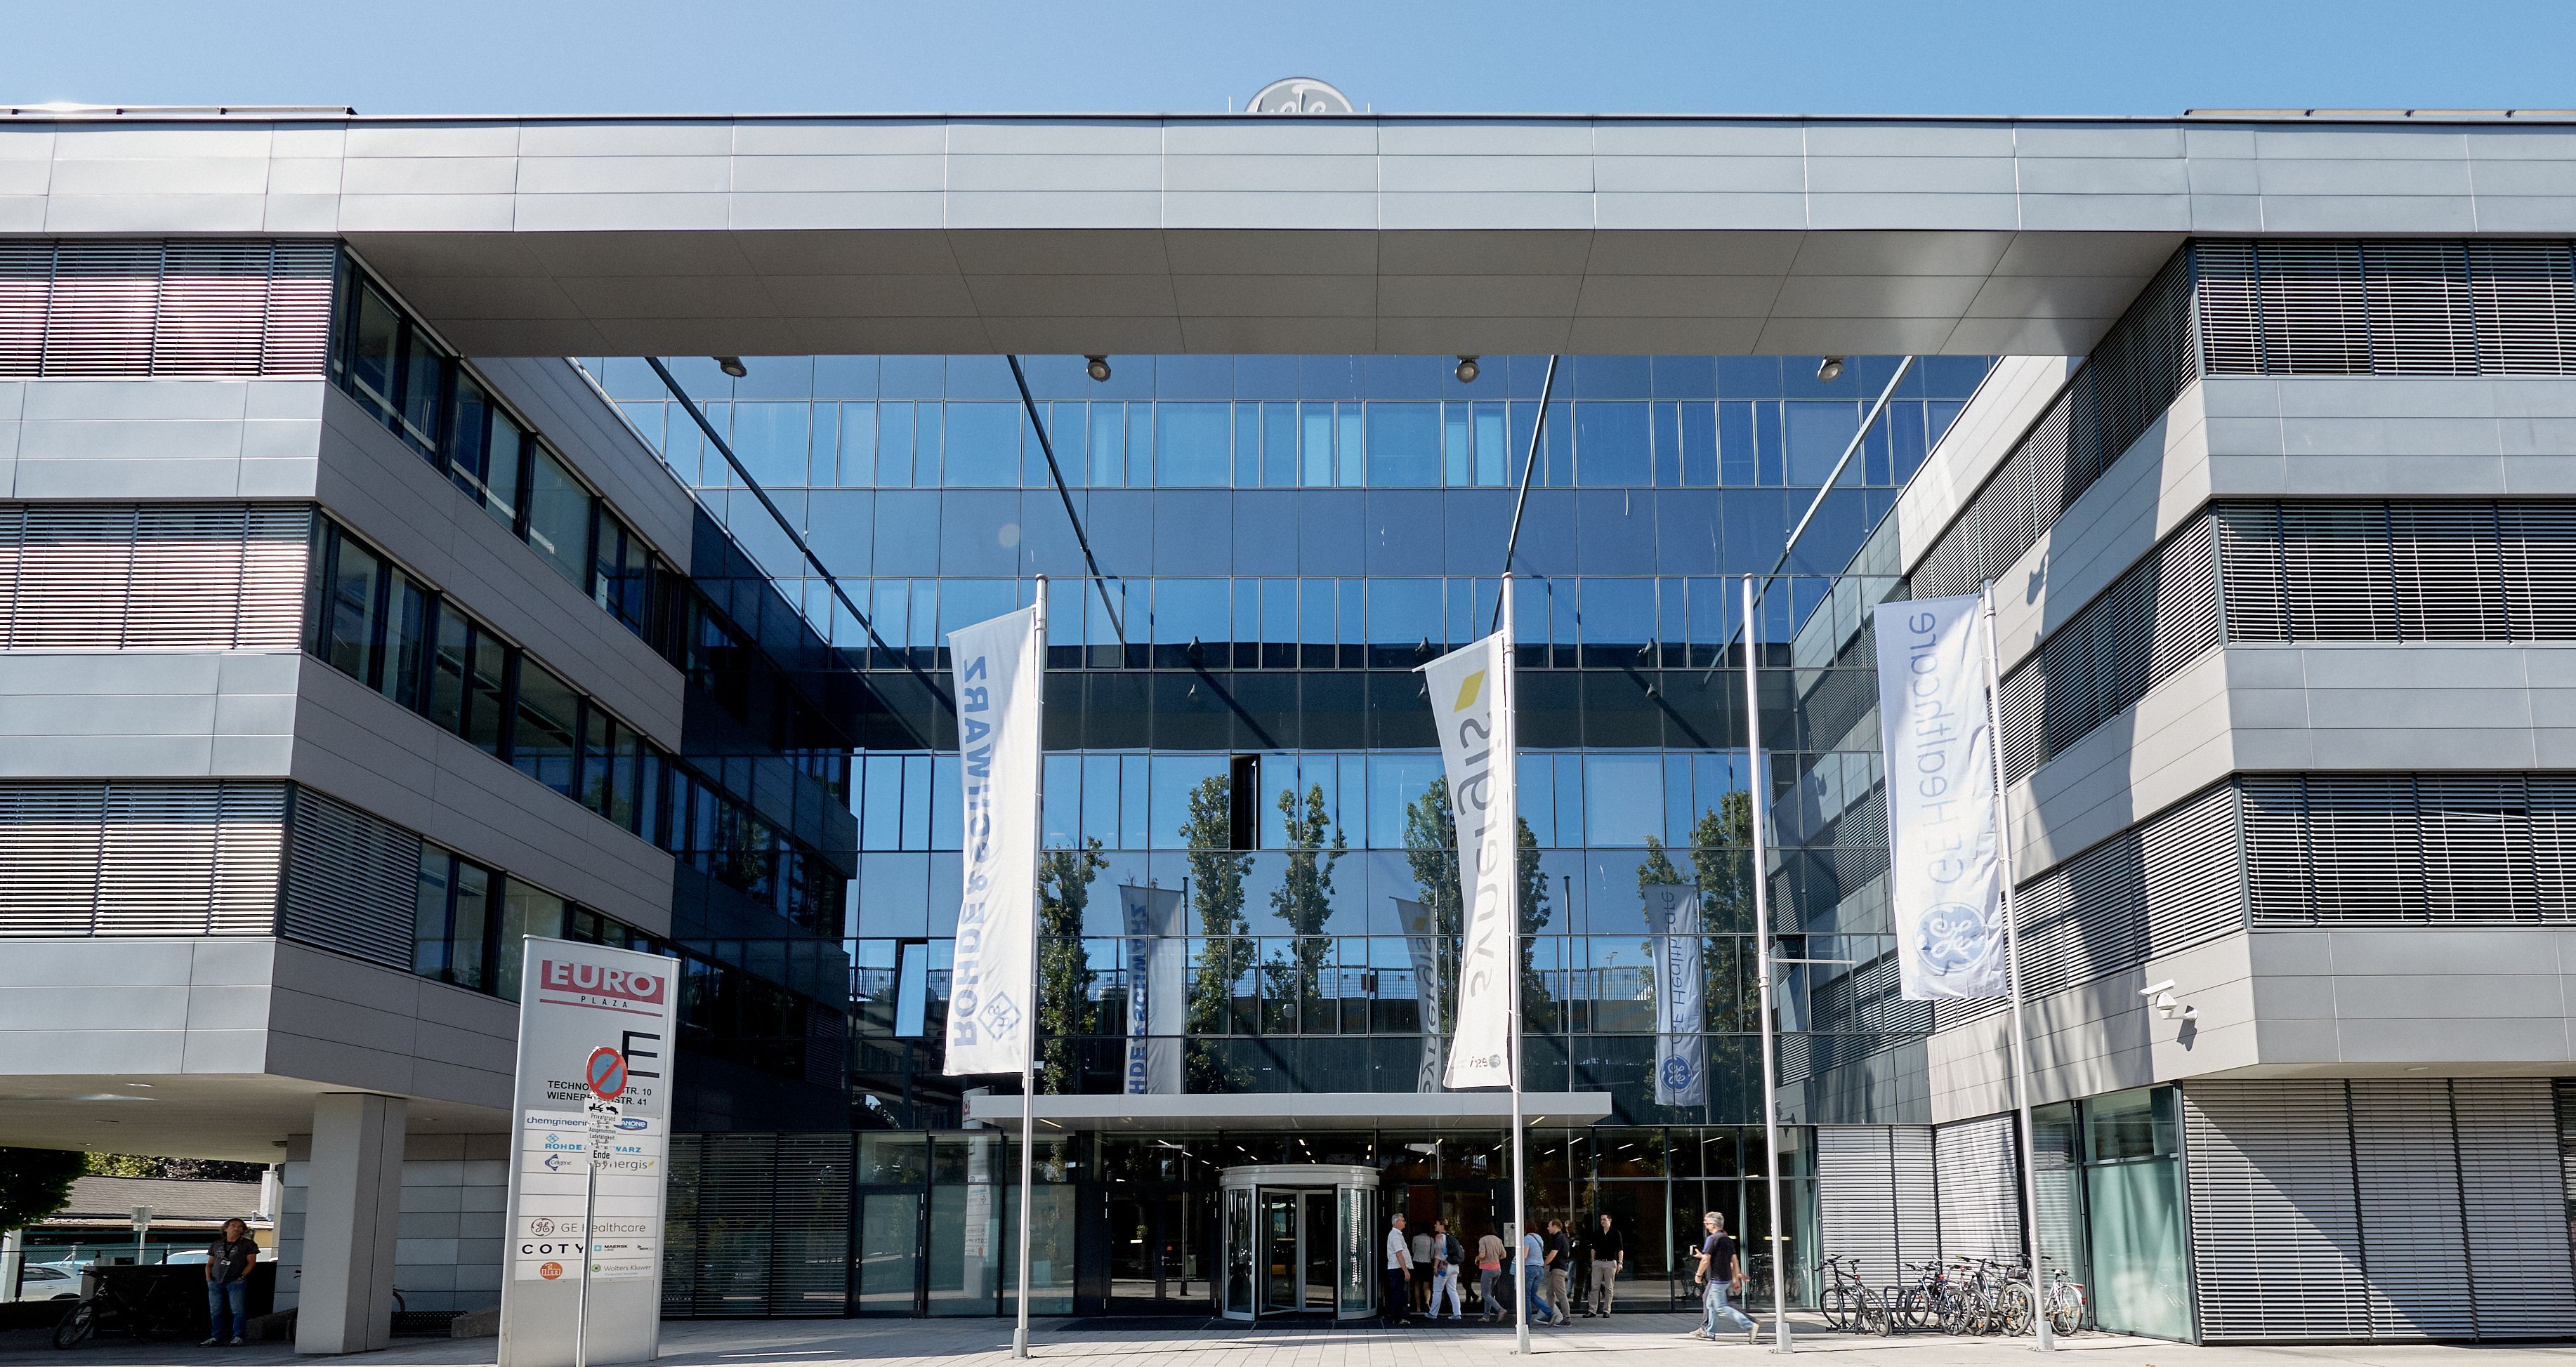 Foto: Eingangsportal eines modernen Bürogebäudes mit Alu-Glasfassade; vor dem Eingangsportal mit Drehtür stehen vier Fahnenmasten, an dreien von ihnen wehen Unternehmensfahnen